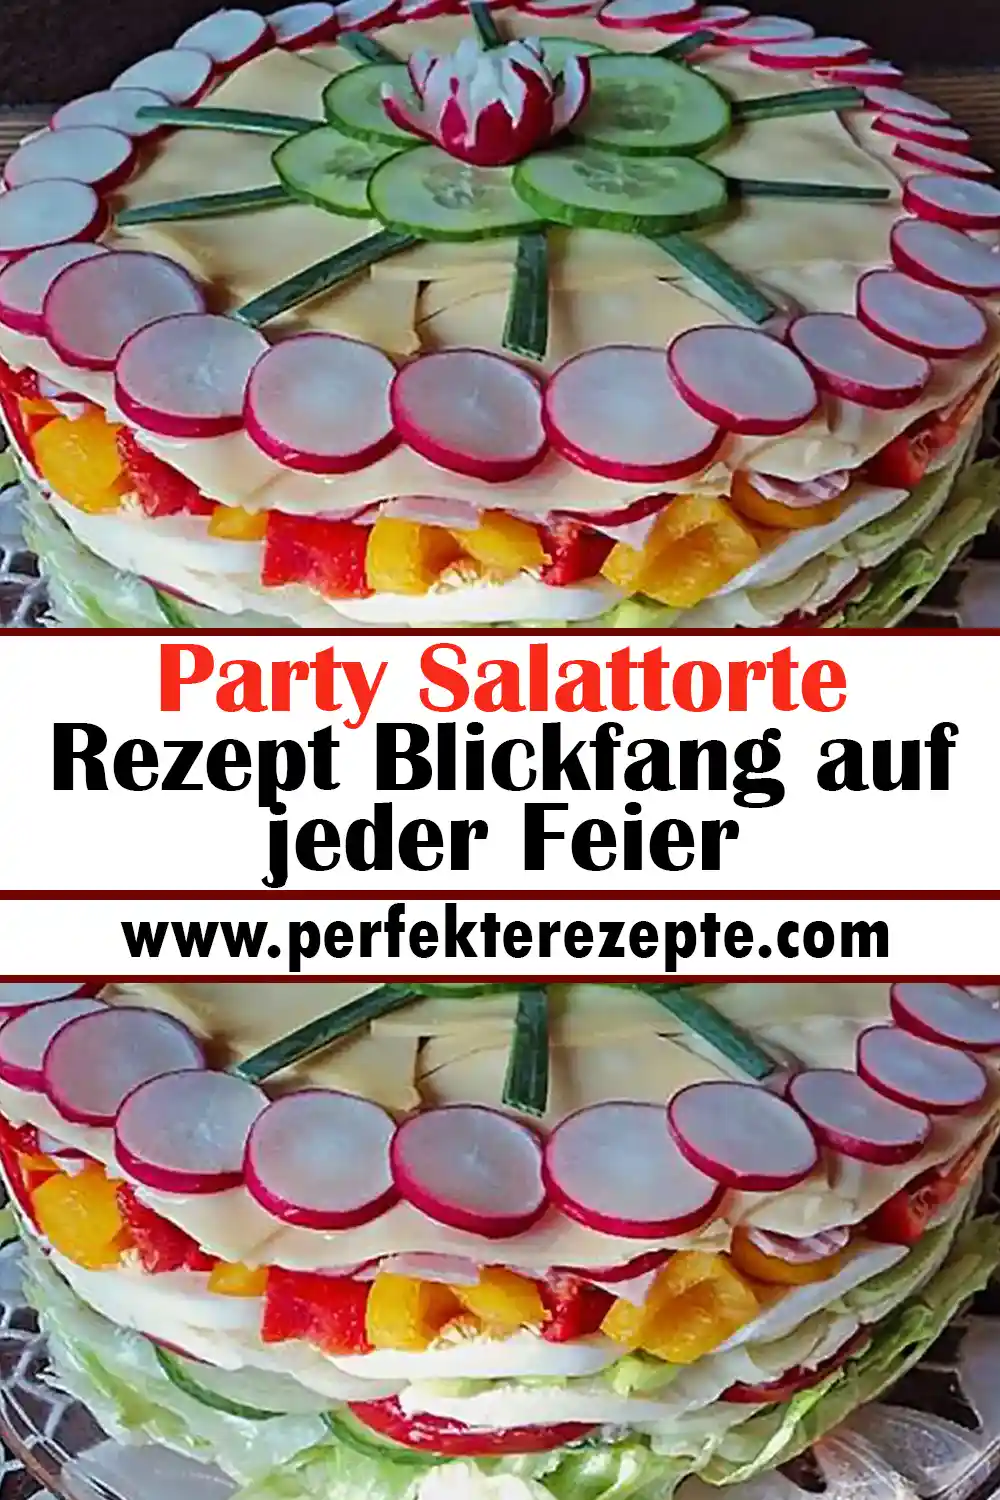 Party Salattorte Rezept Blickfang auf jeder Feier